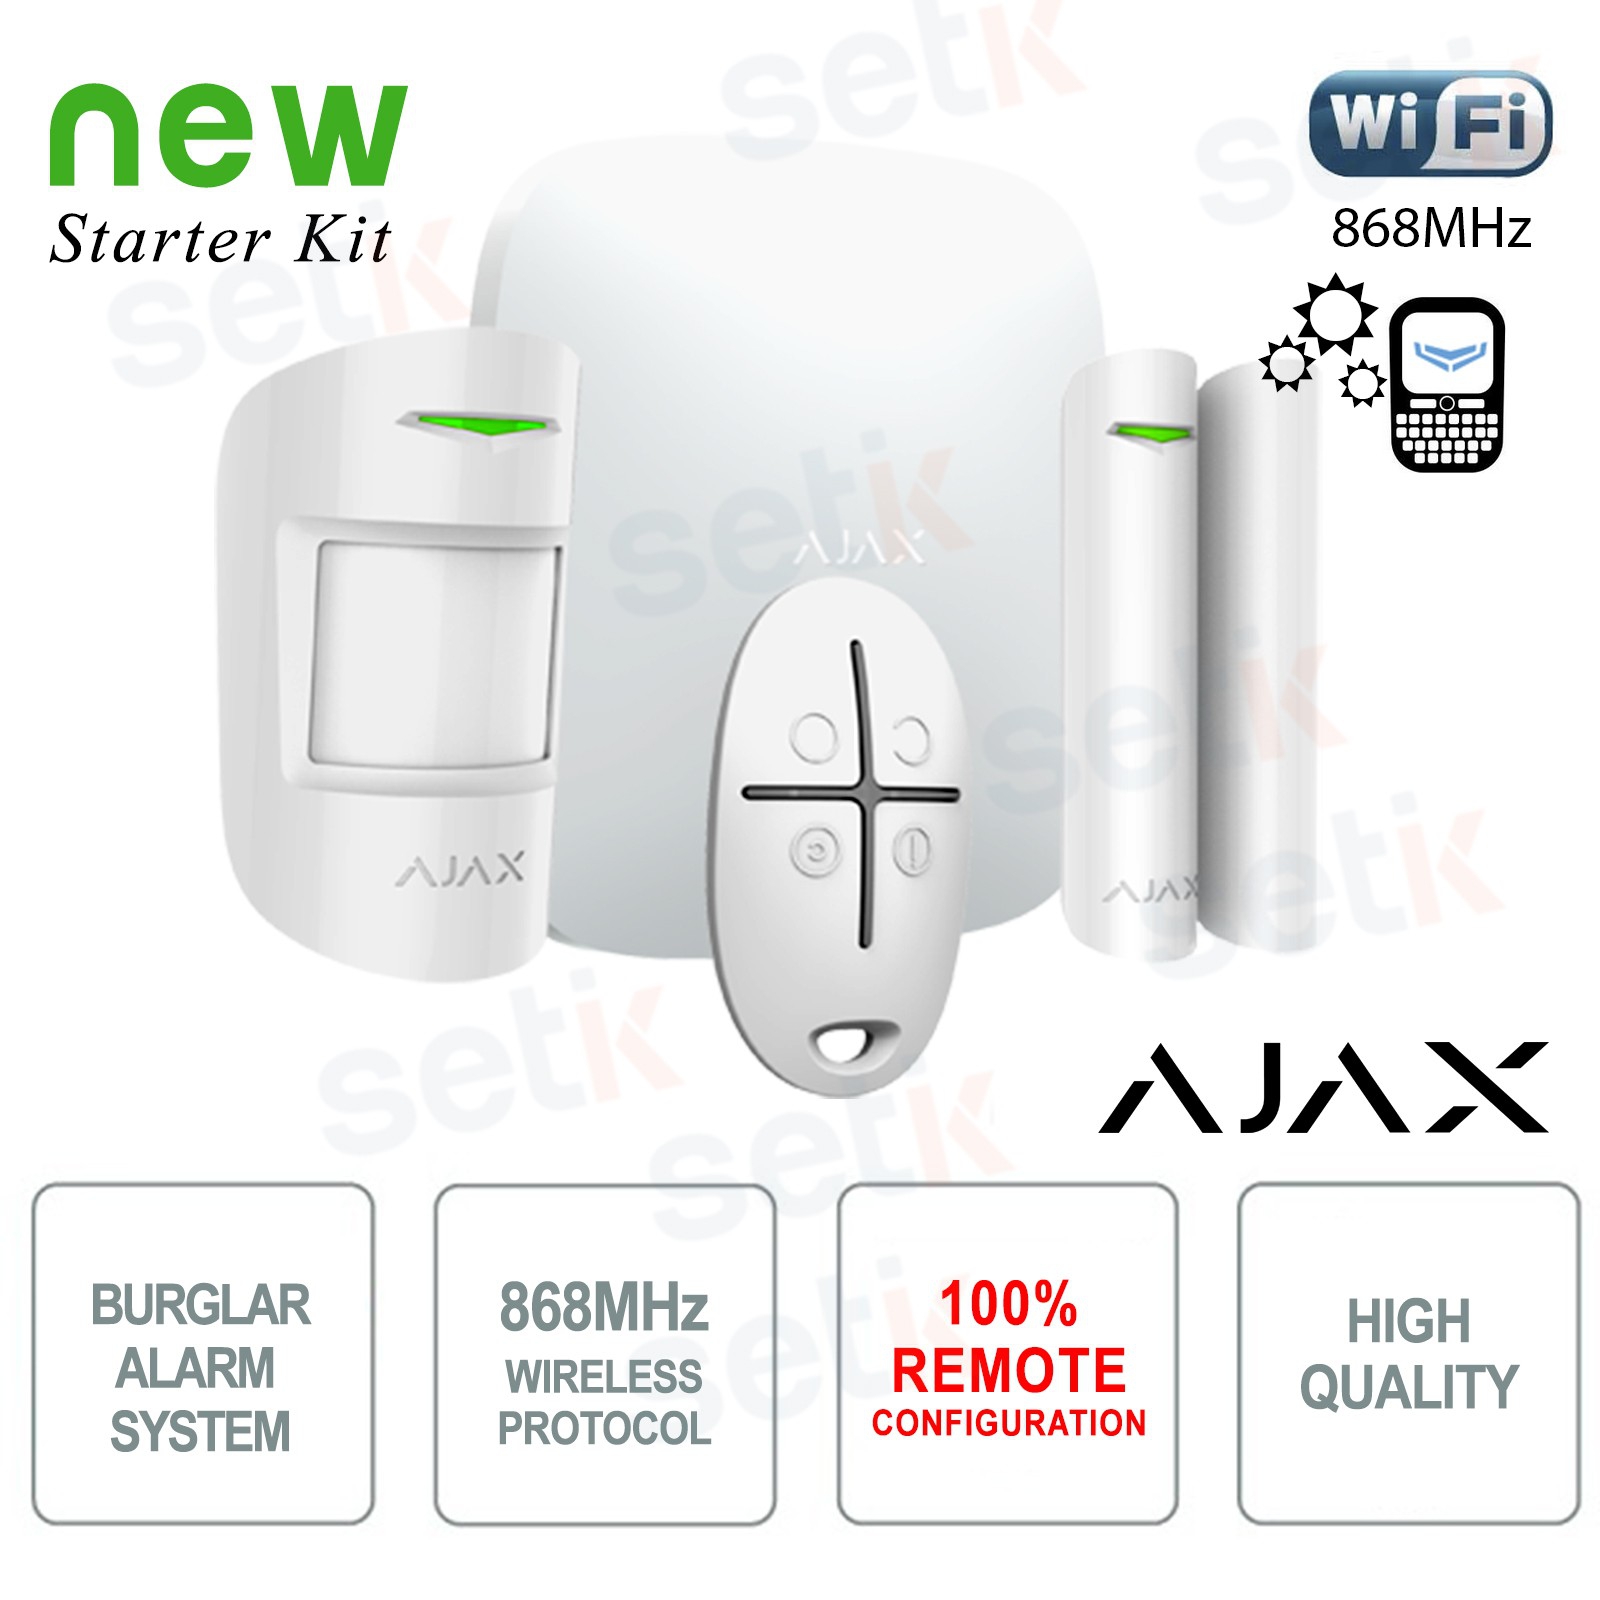 Kit de sistema de alarma Ajax inalámbrico para su hogar o negocio